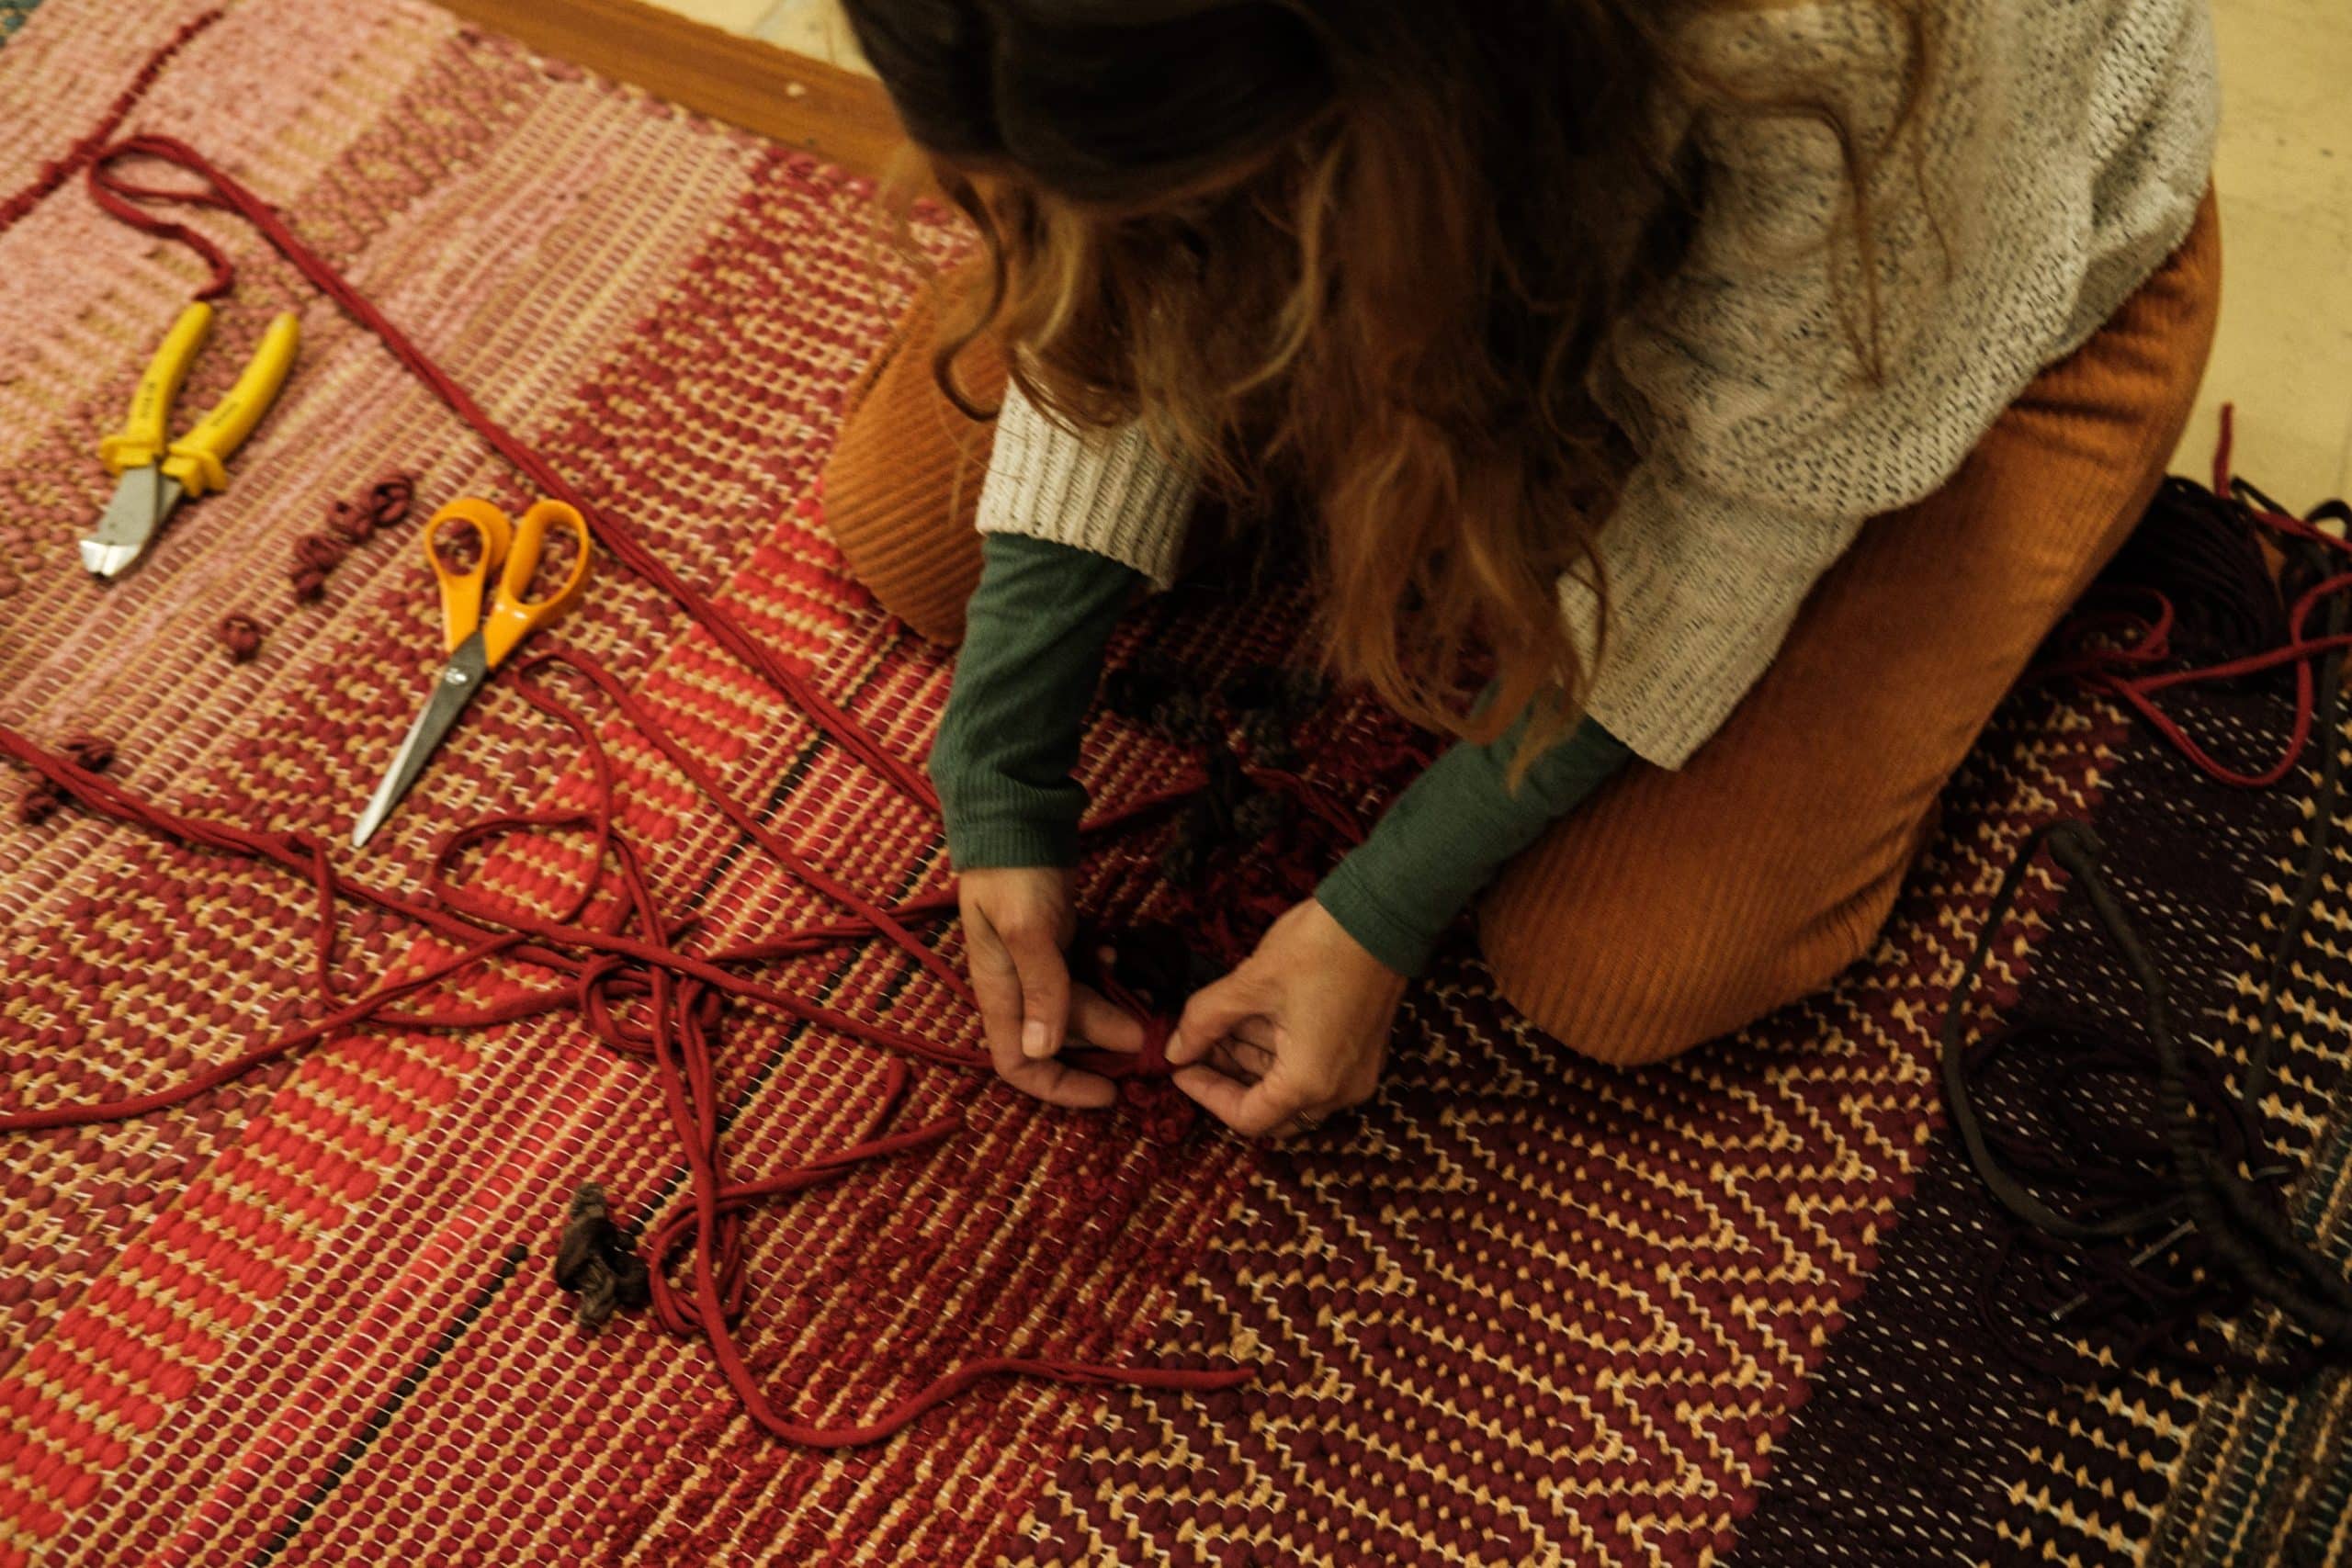 Sentada no chão, Susana trabalha com as suas duas mãos num tapete.